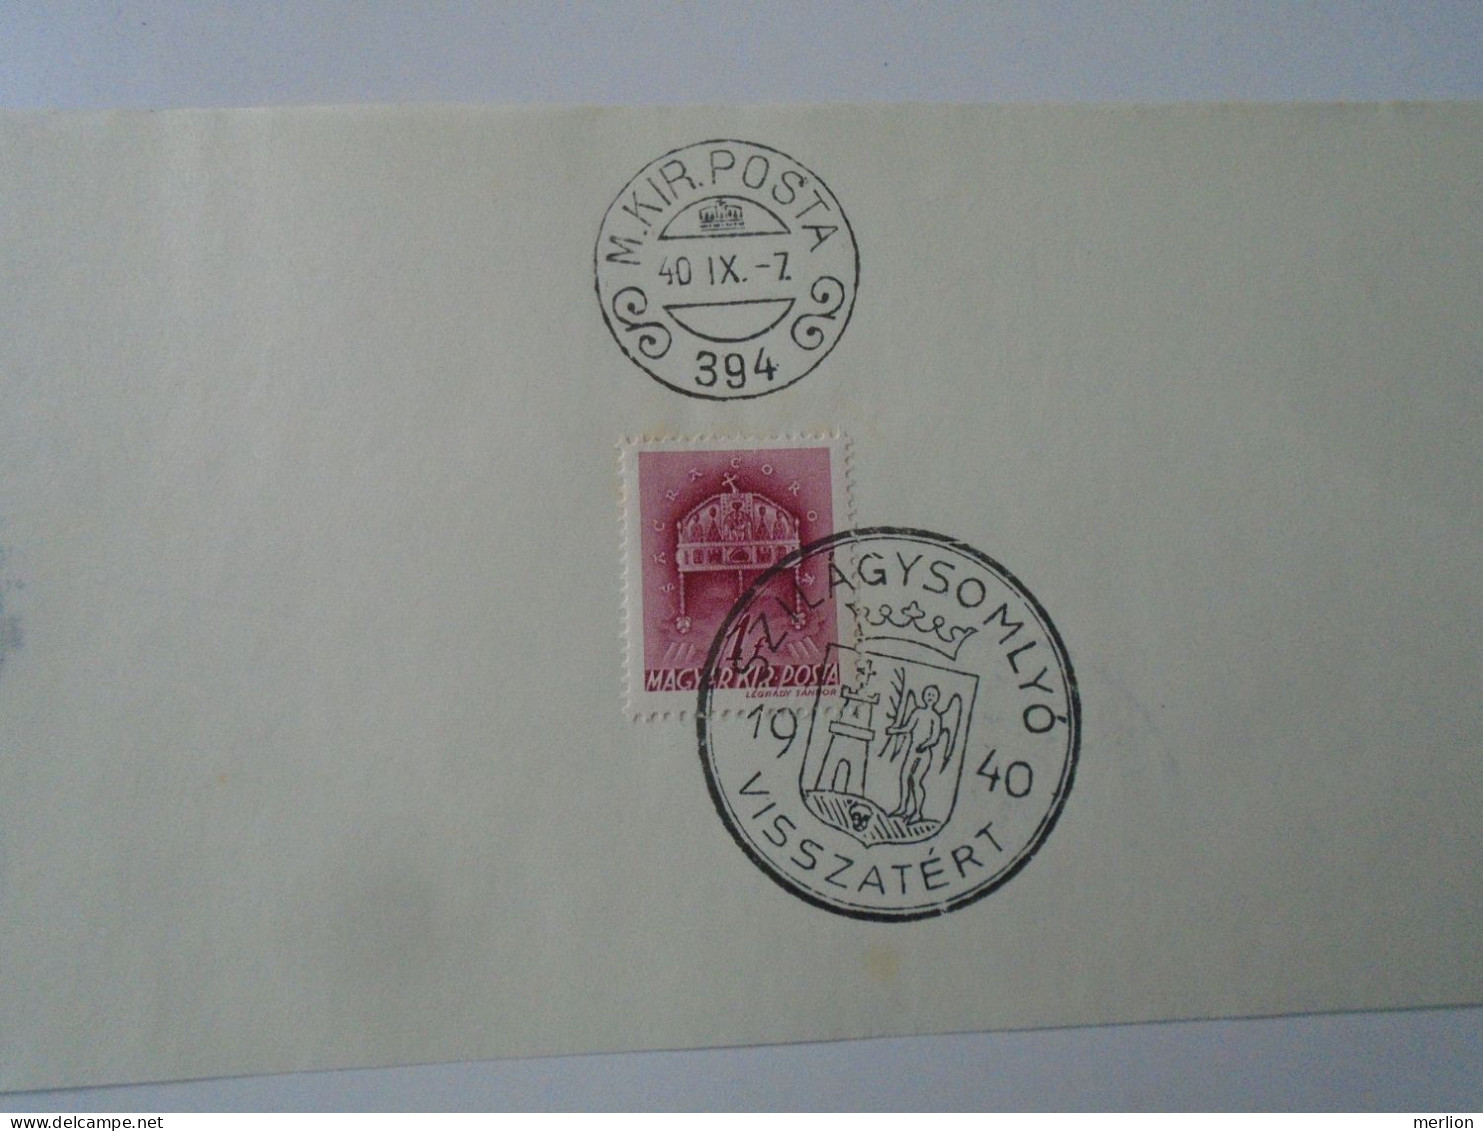 ZA451.21 Hungary- Szilágsomlyó, Nagyvárad, Kézdivásárhely, Kolozsvár Visszatért -Commemorative Postmark 1940 - Postmark Collection